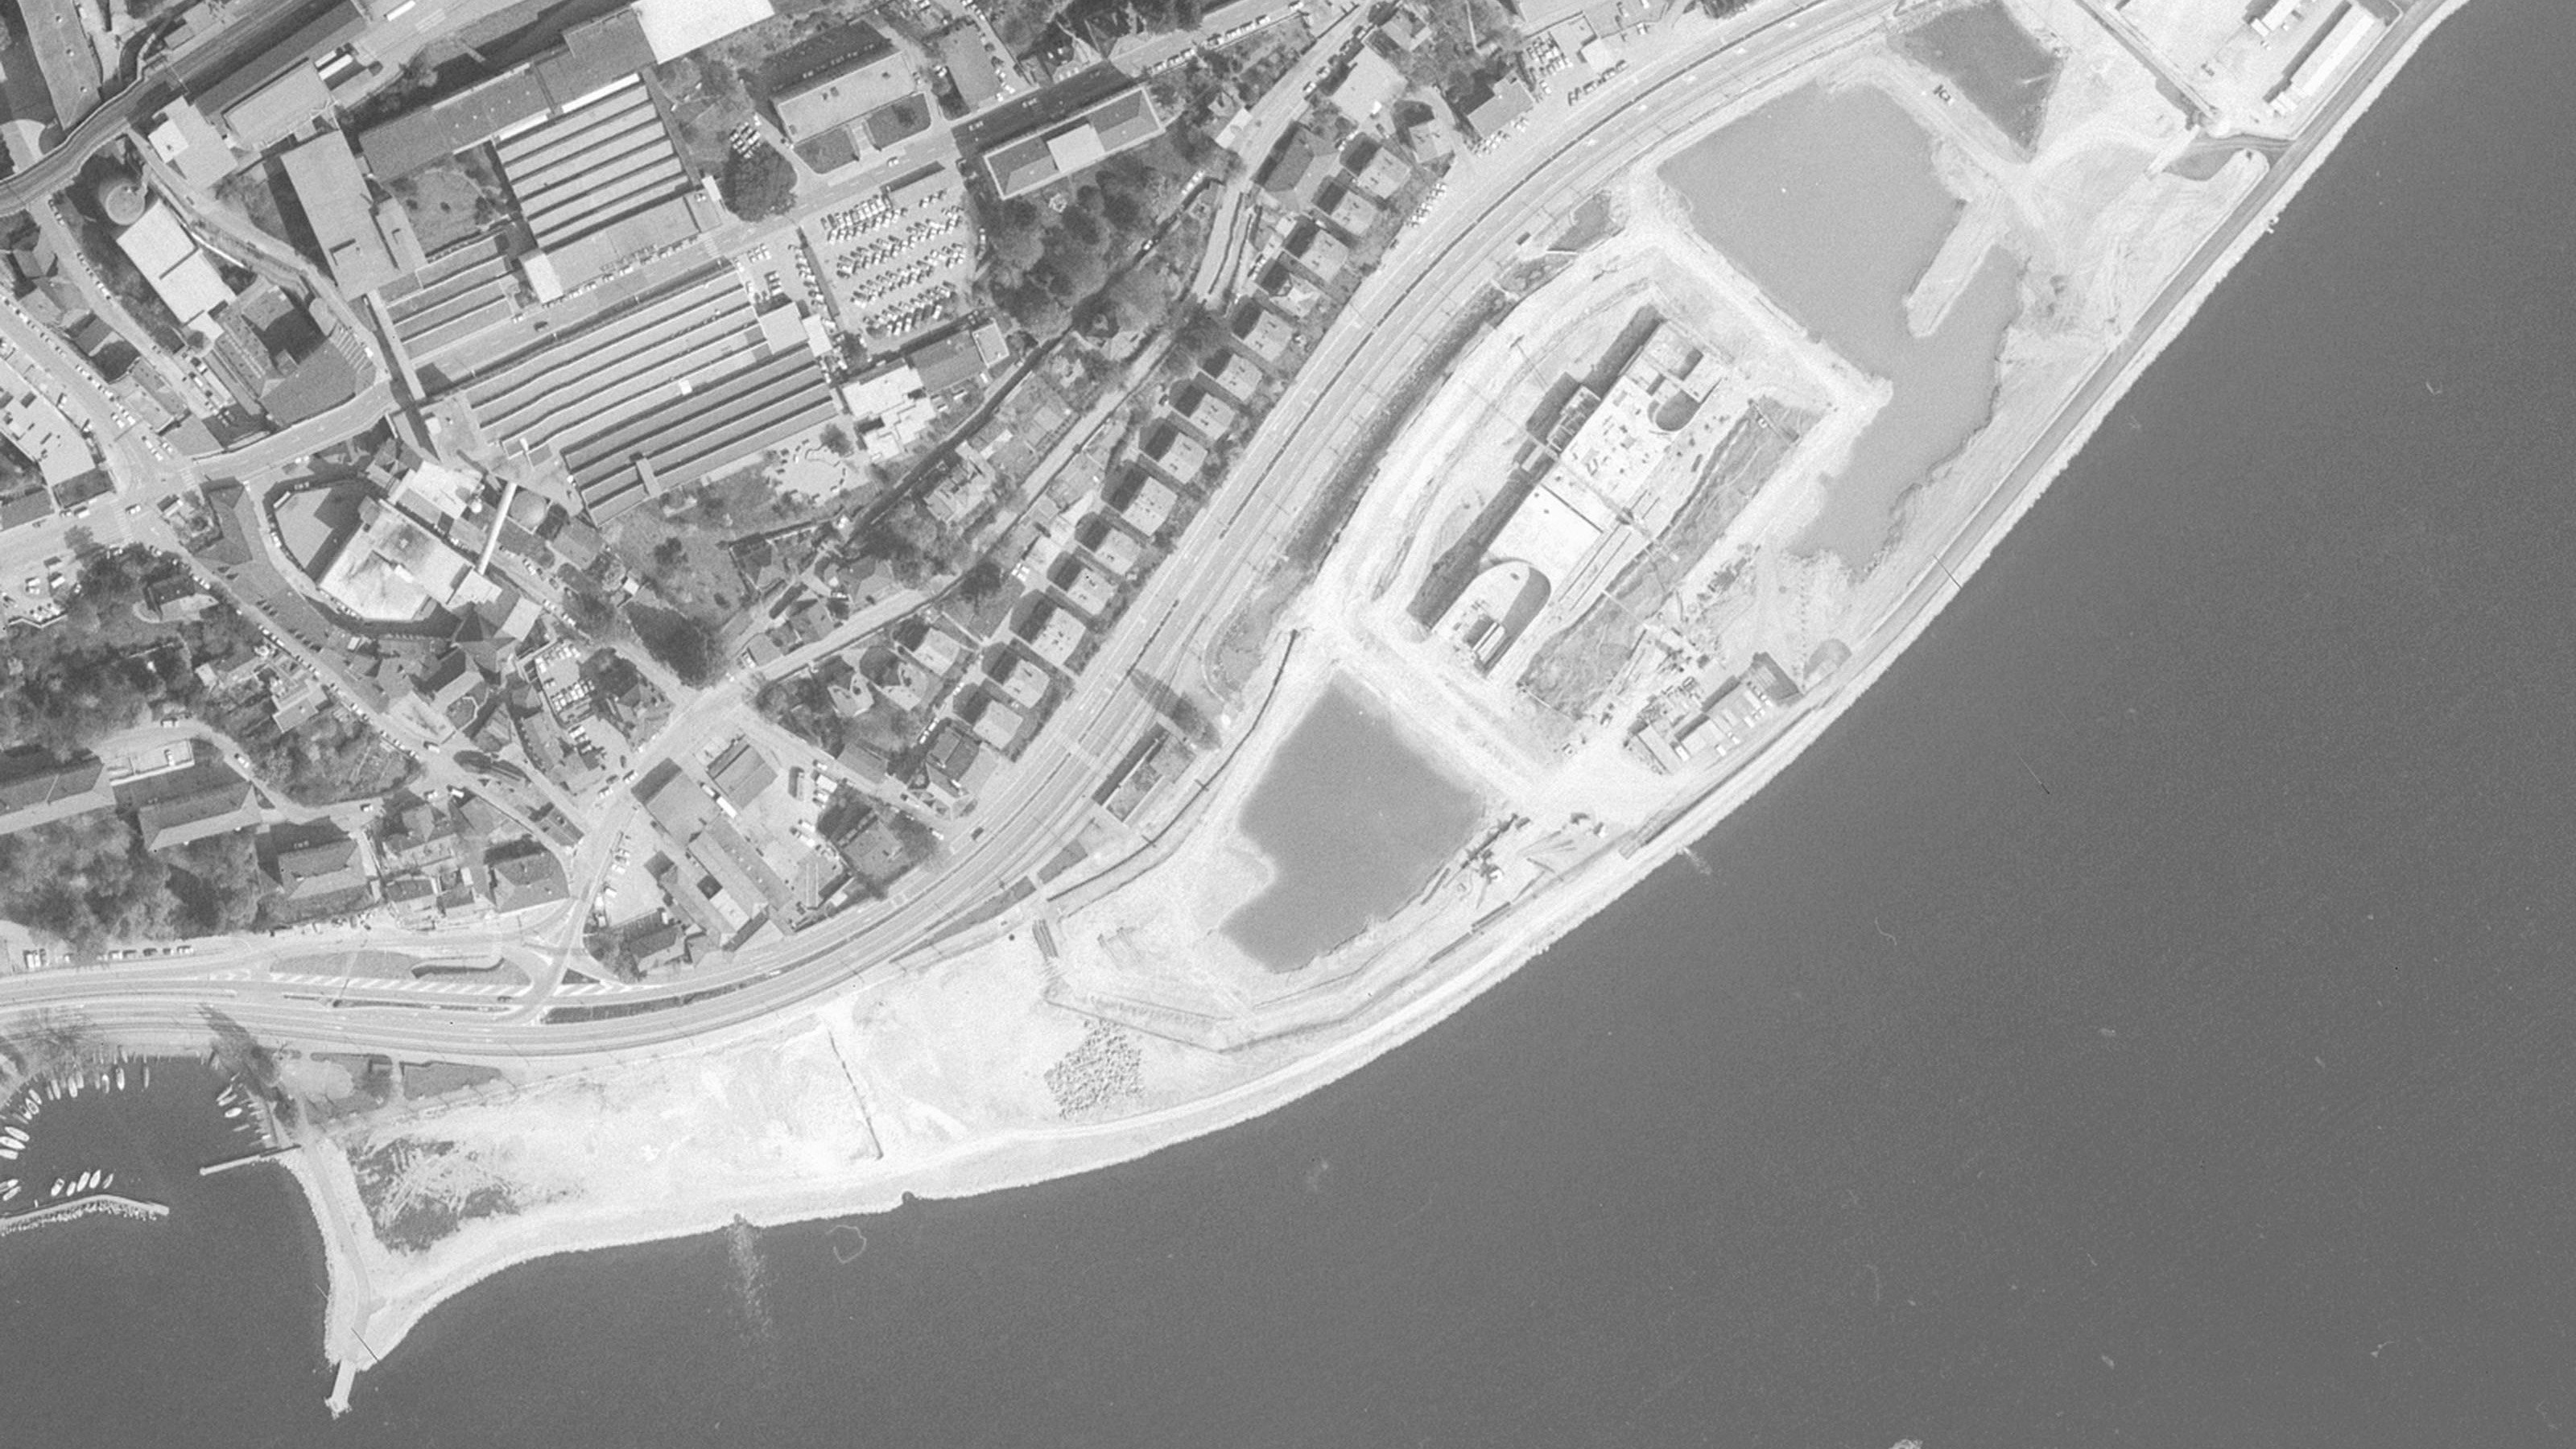 Luftbild von Neuenburg, 1987, schwarzweiss. Die Stadt breitet sich in früheres Seegebiet aus.